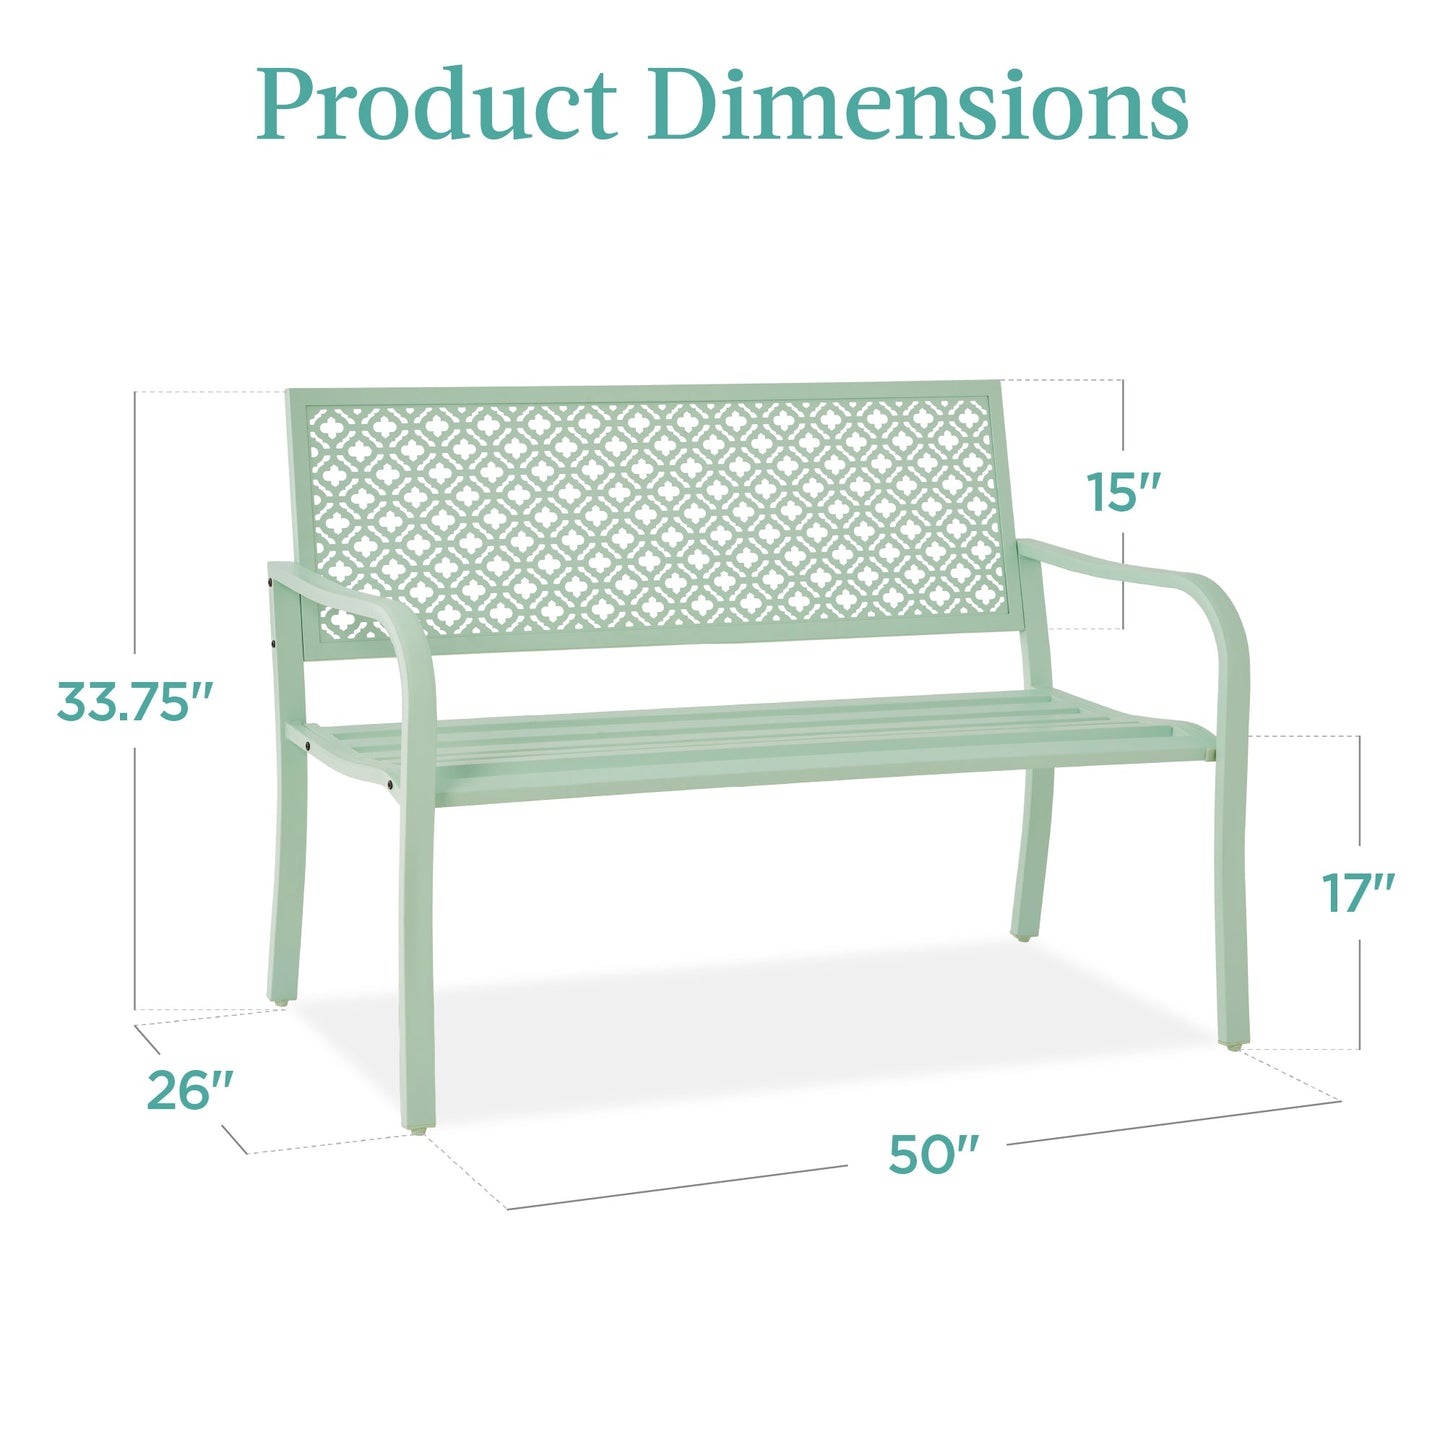 Indoor Outdoor Steel Bench w/ Geometric Backrest, Foot Levelers